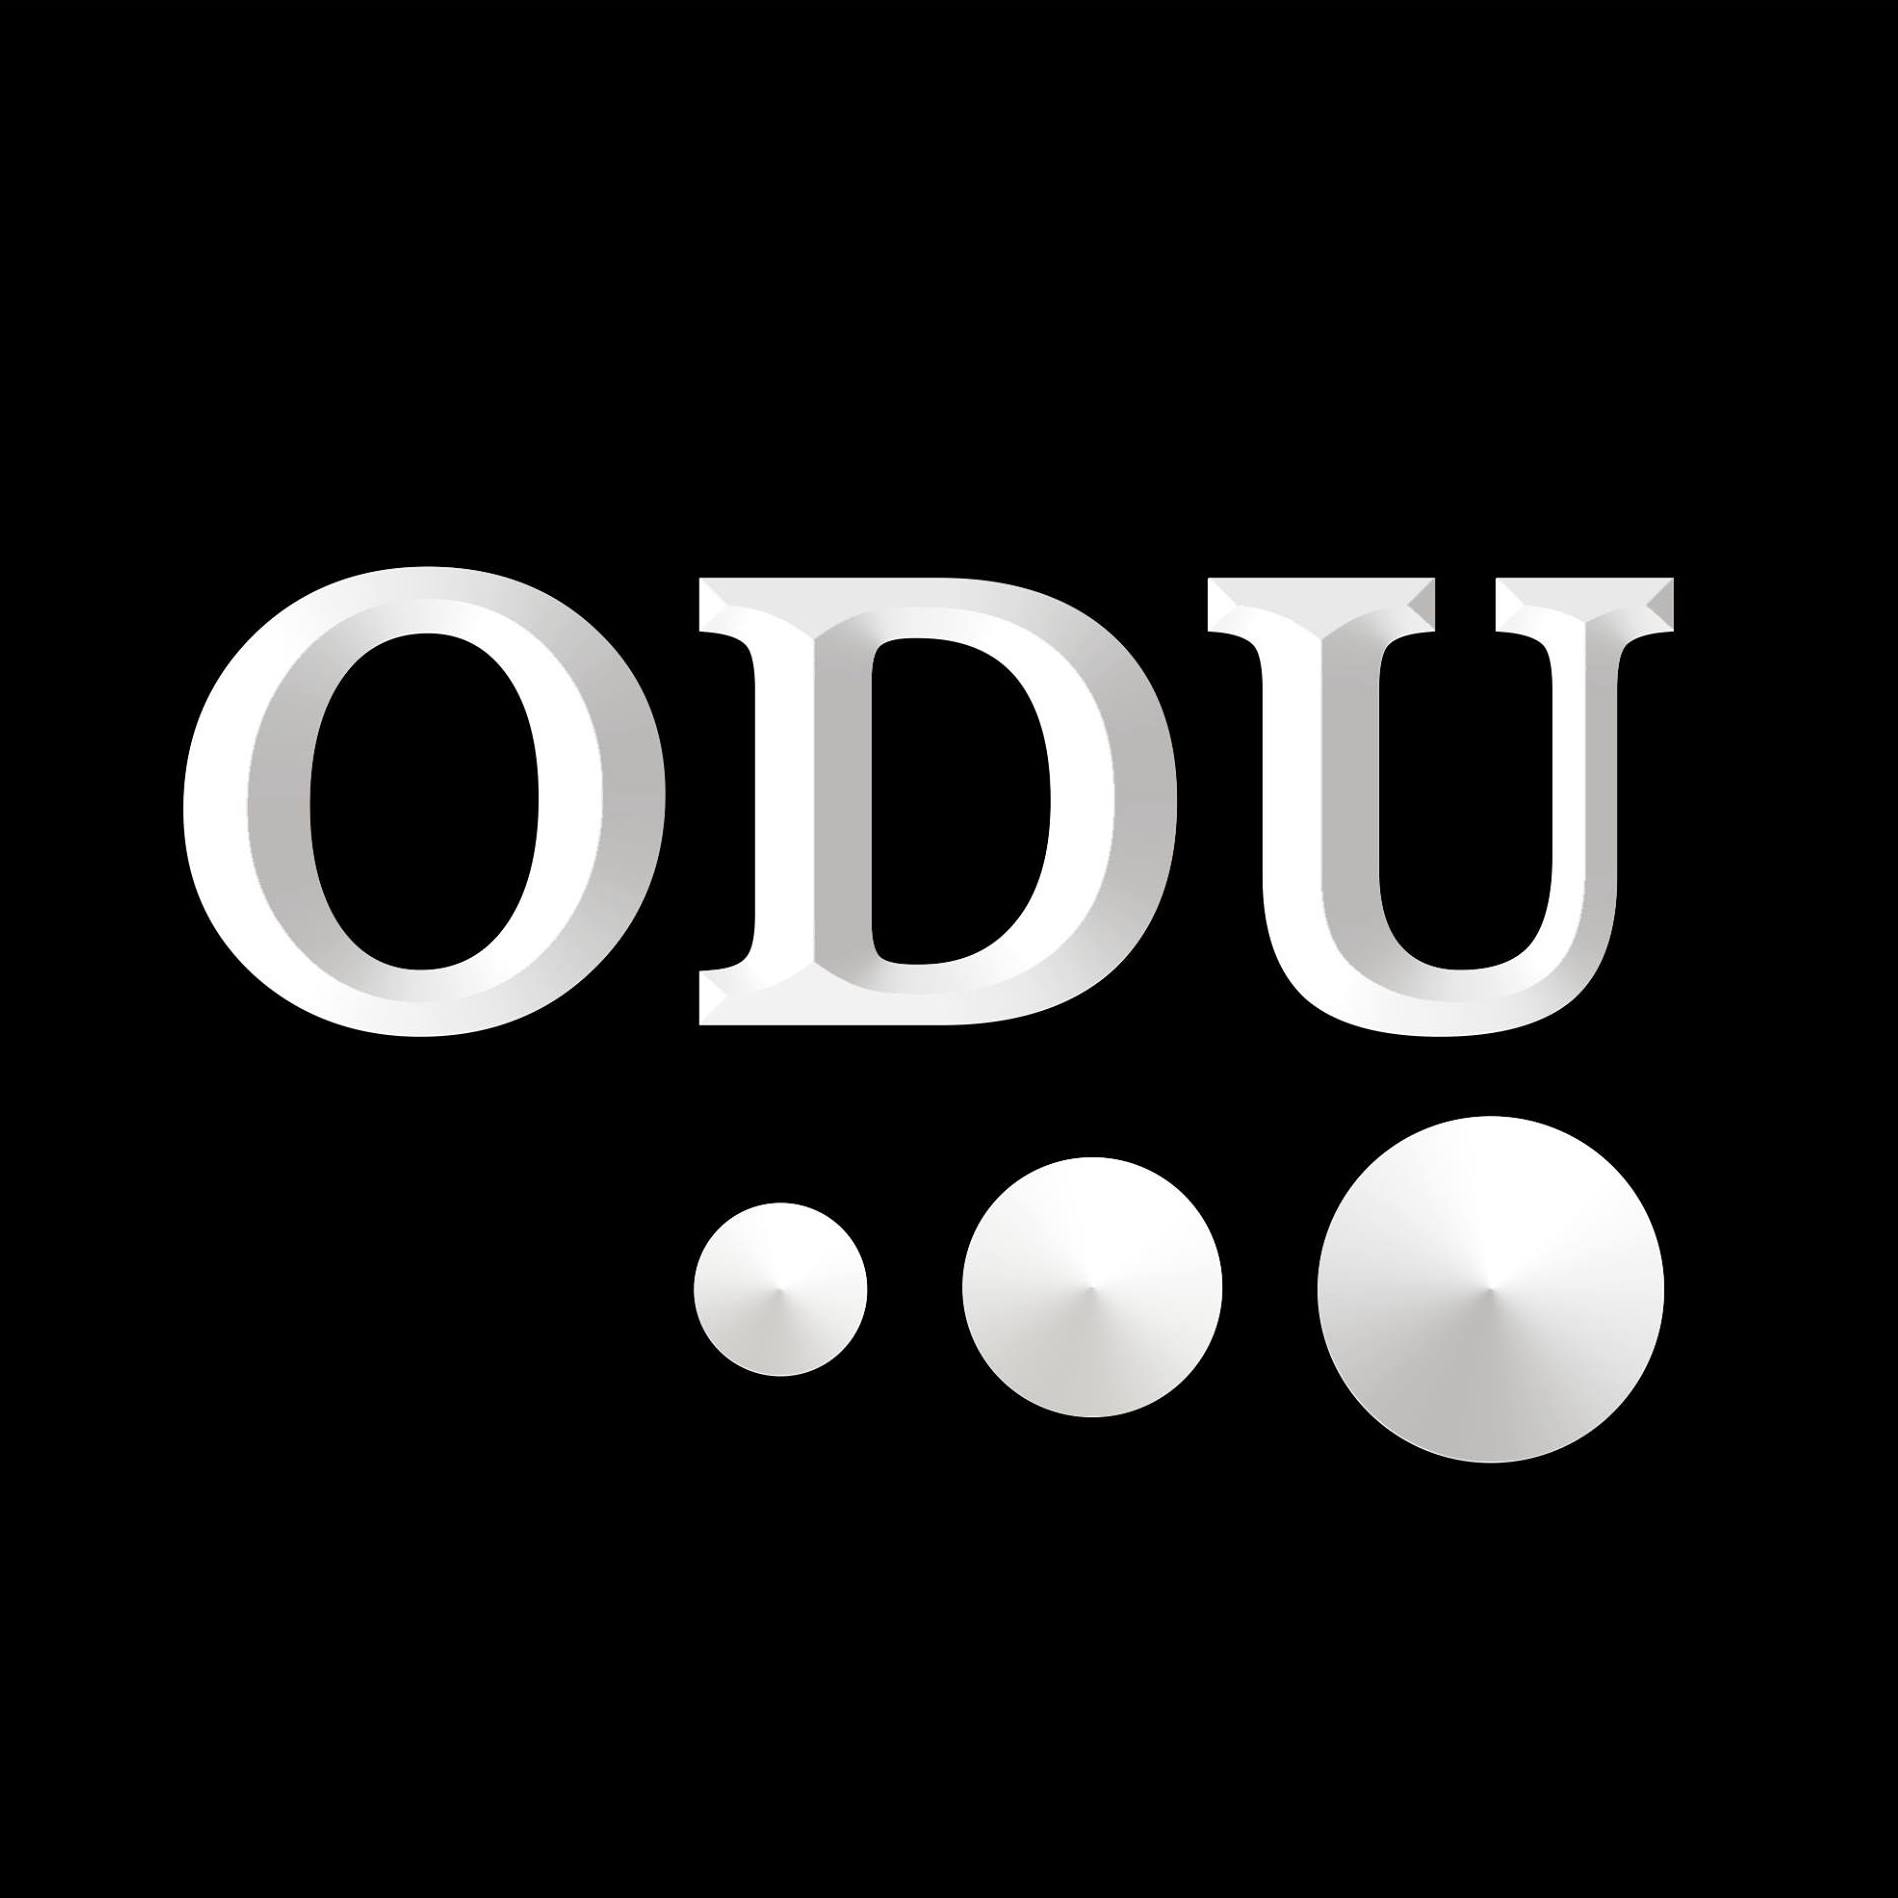 Company logo of ODU sportswear